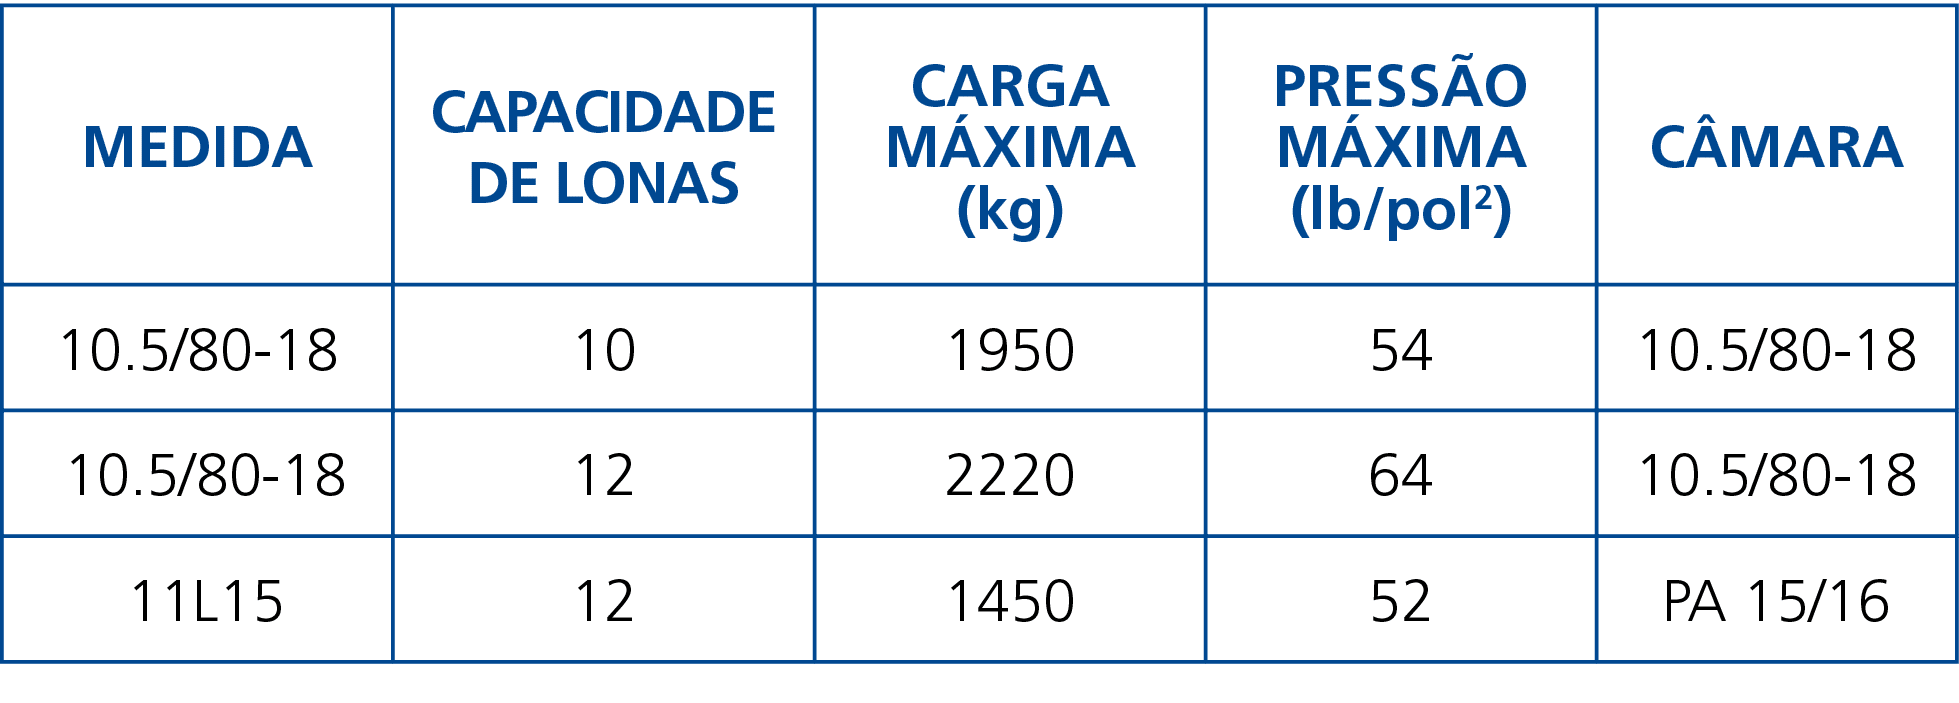 Medida,Capacidade de Lonas,Carga Máxima (kg),Pressão Máxima (lb pol2),Câmara,10 5 80-18 ,10,1950,54,10 5 80-18, 10 5    